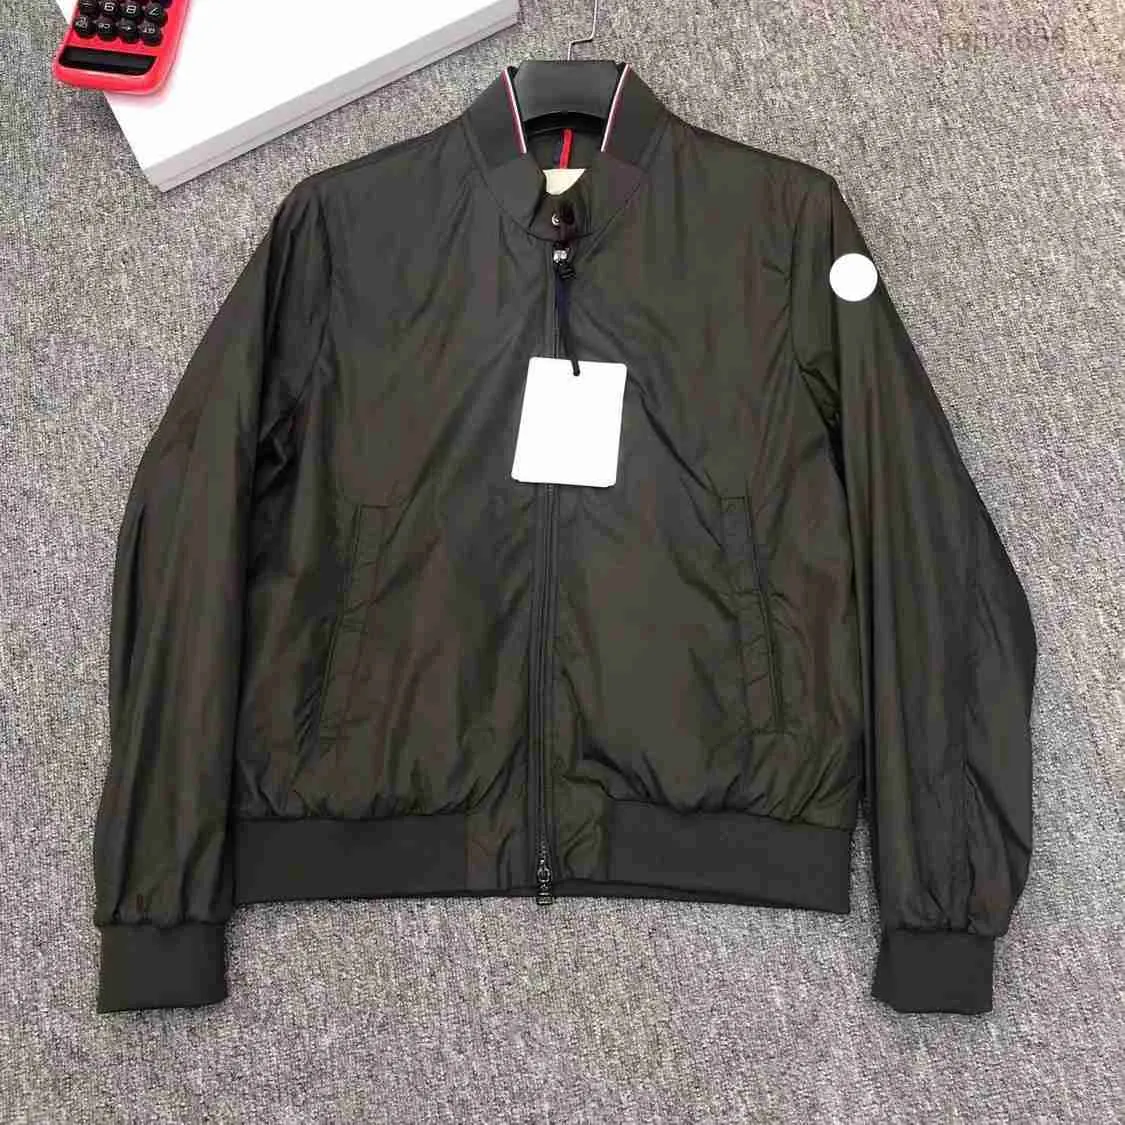 Дизайнерские куртки Monclair Moncle r Куртки Франция Бомбер с вышитым значком на лобовом стекле Мужские уличные пальто Полные этикетки S-3xl